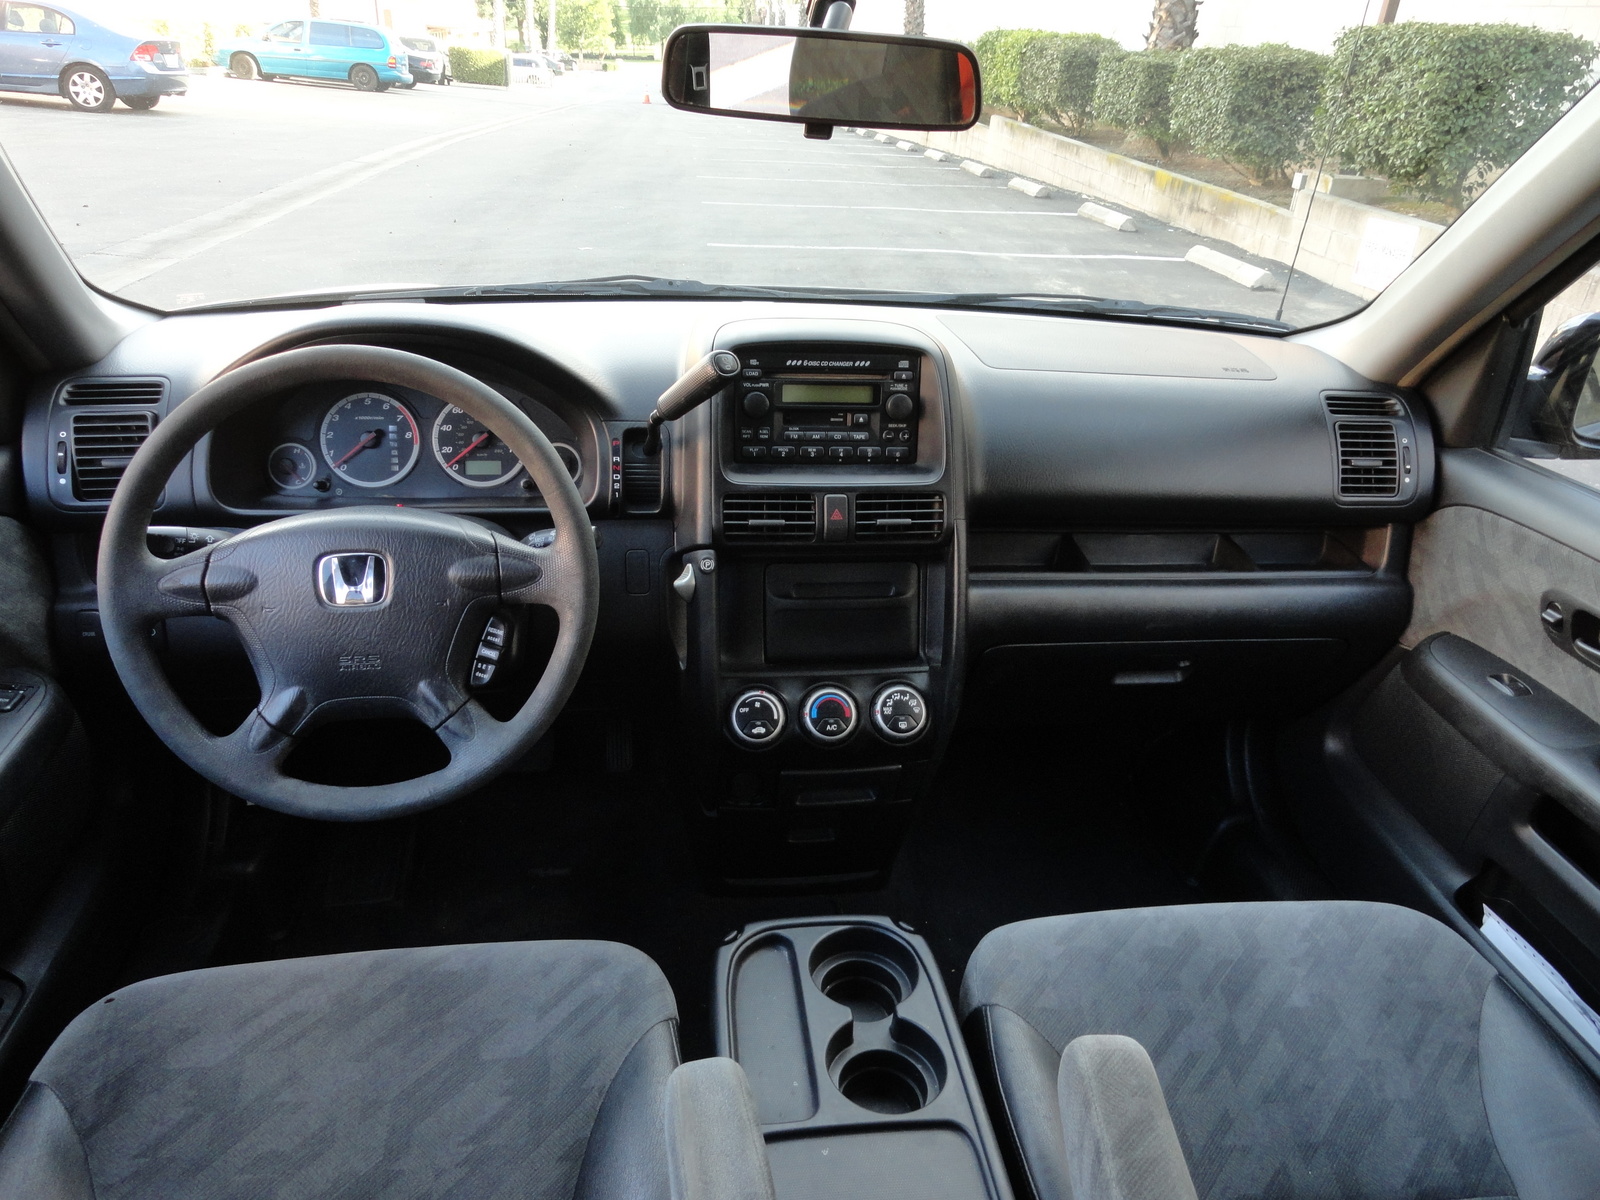 2004 Honda CRV Interior Pictures CarGurus